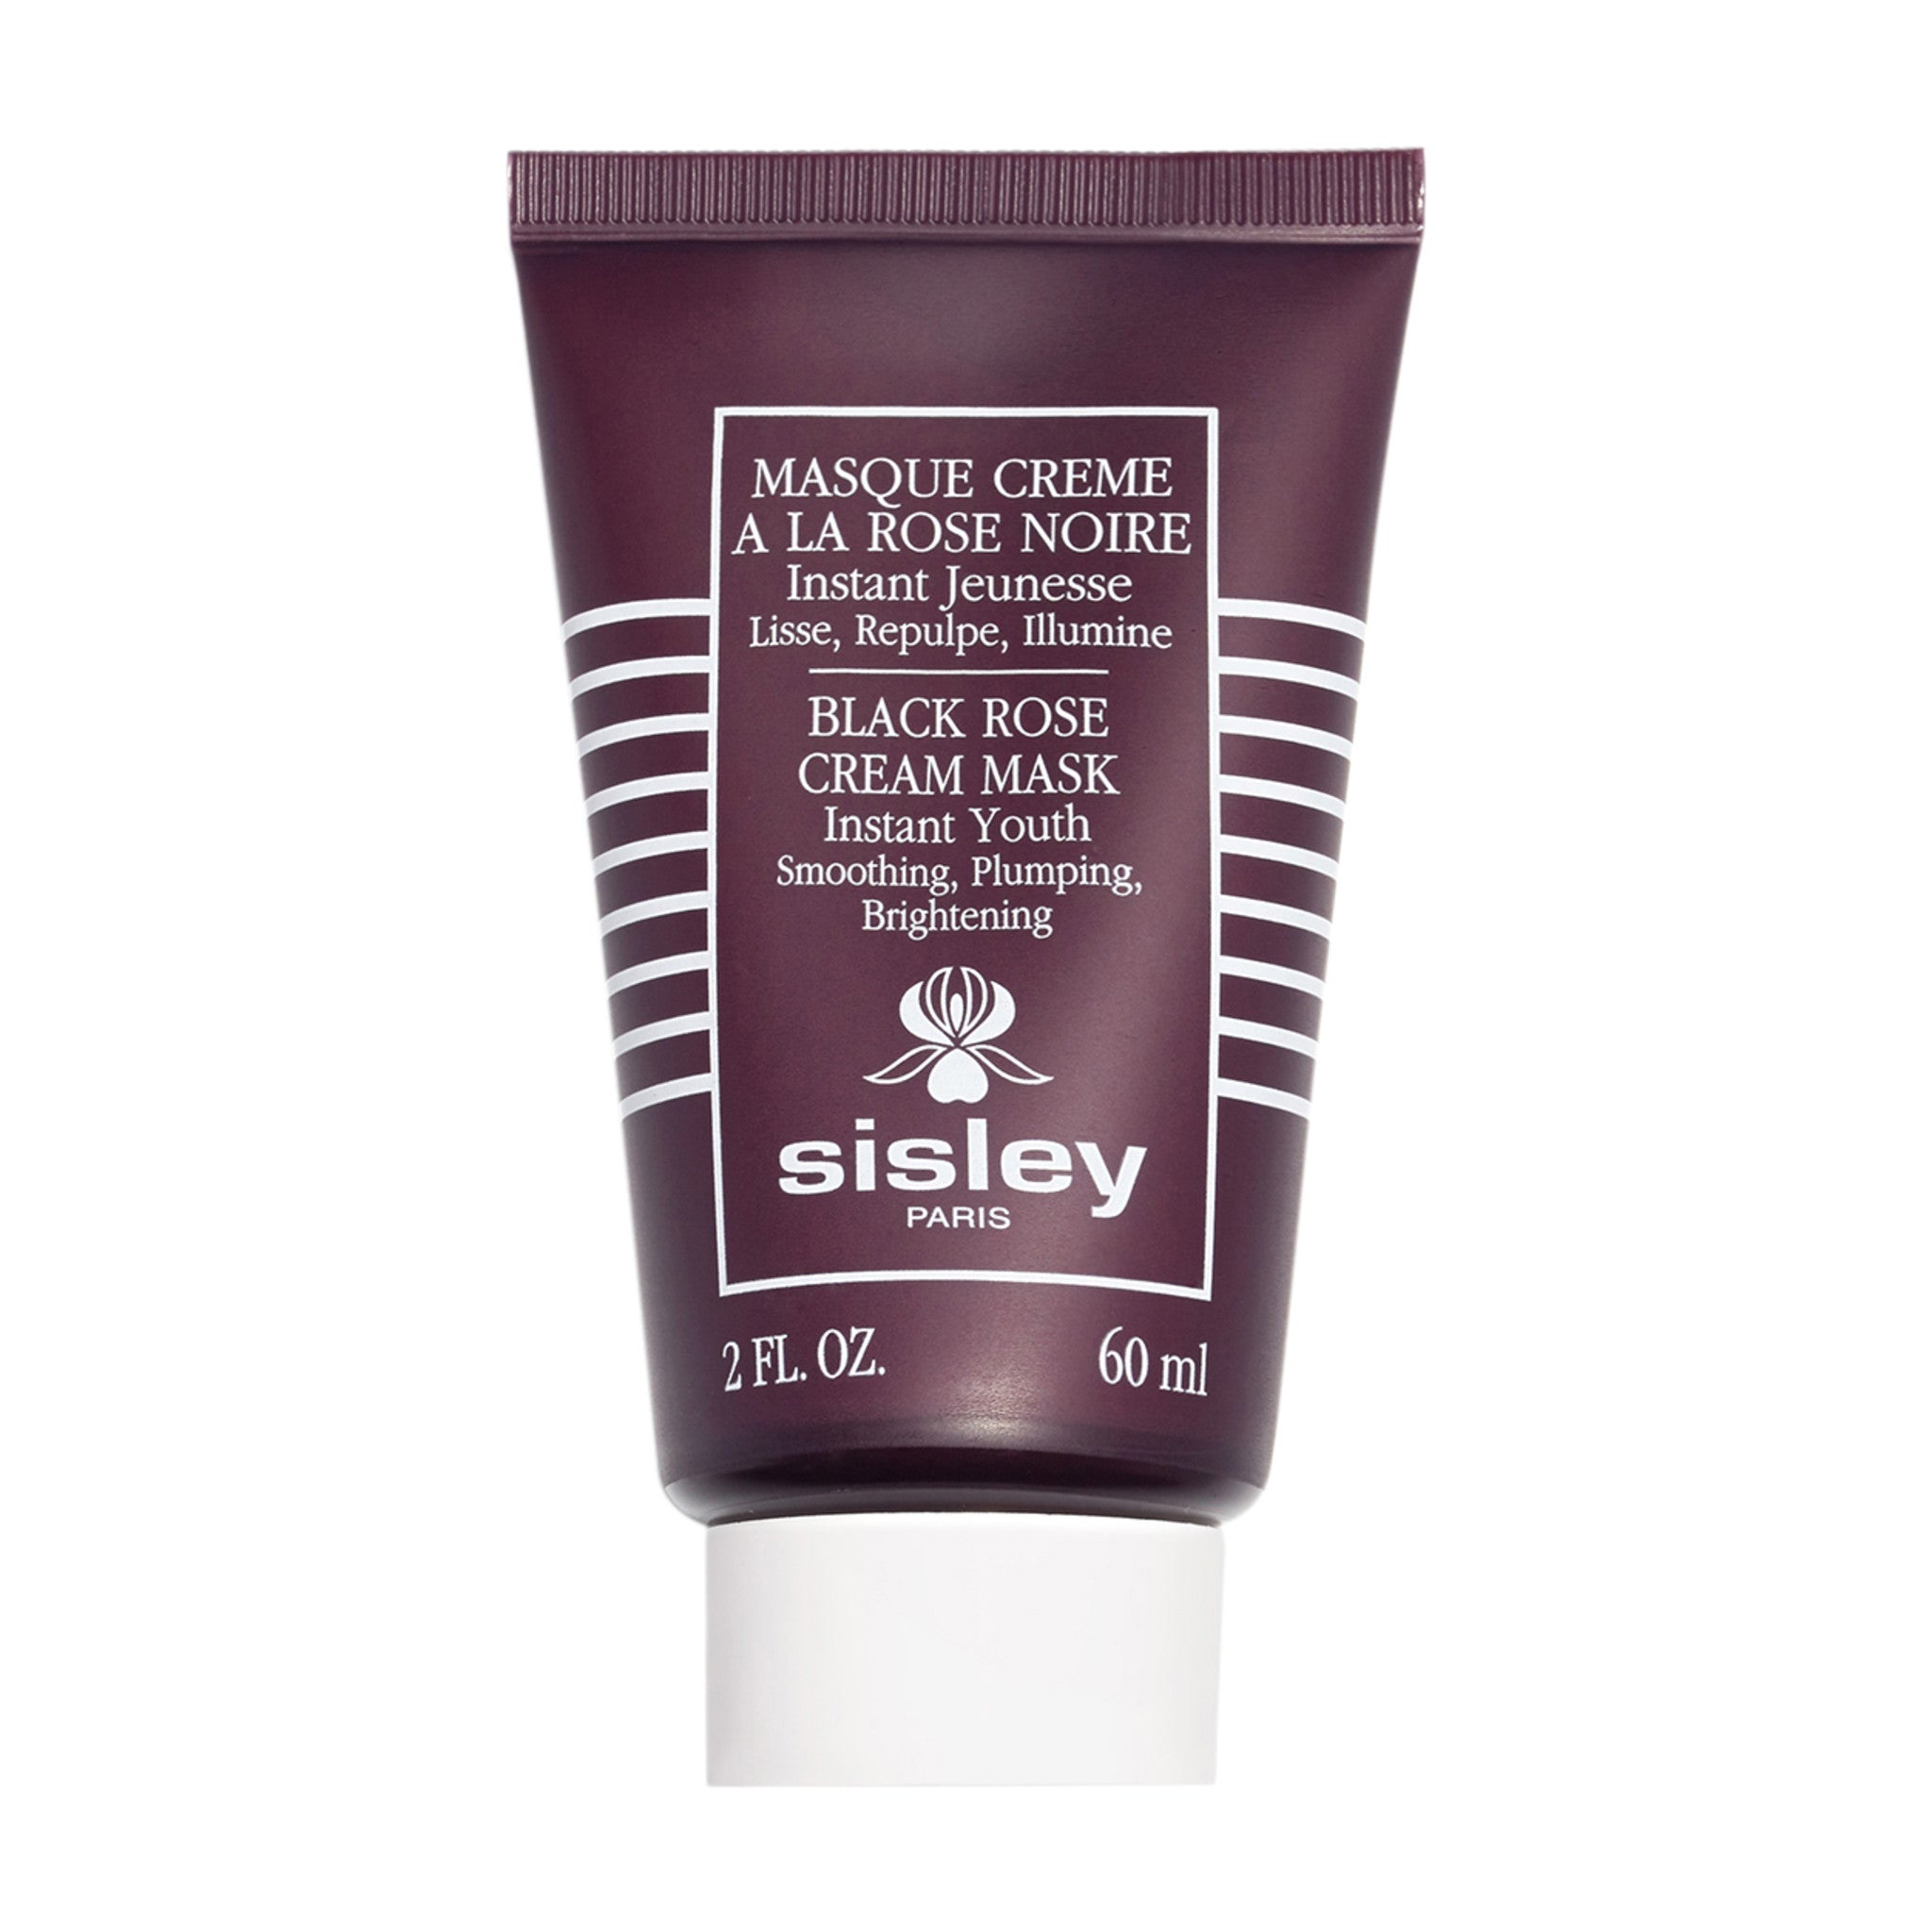 Sisley-Paris Black Rose Cream Mask main image.